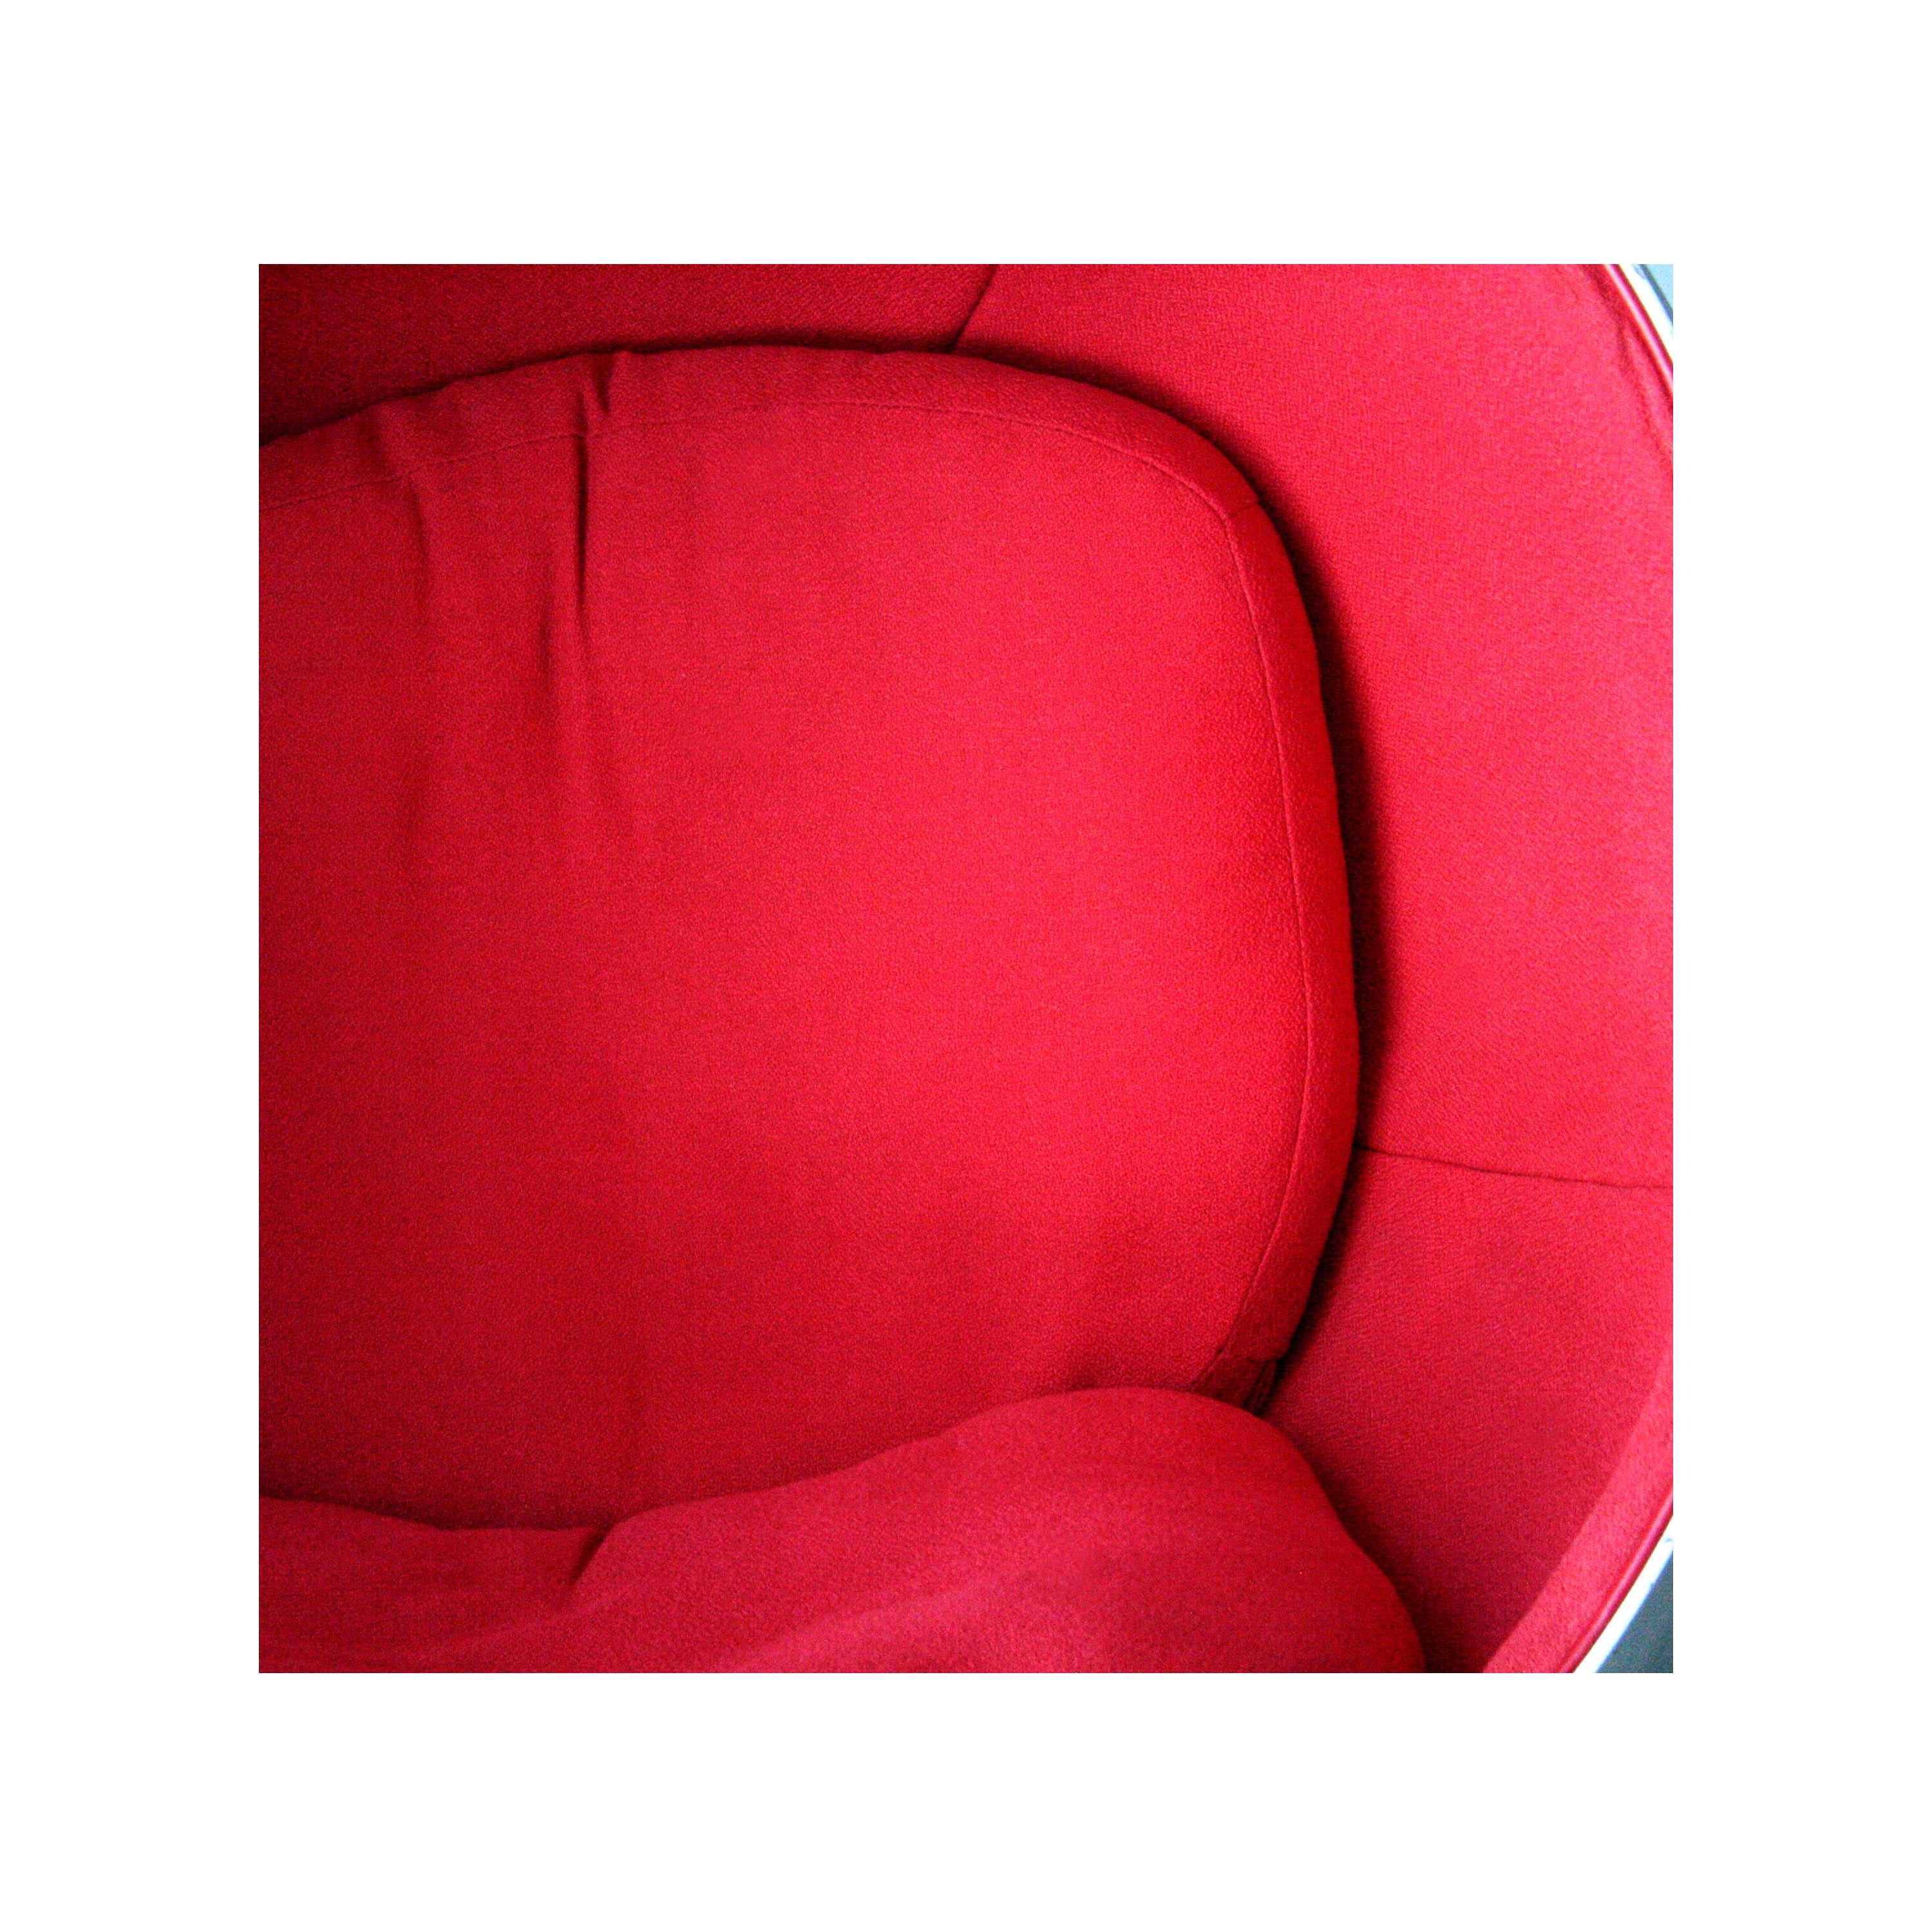 Dieser Sessel ist einer der bekanntesten und beliebtesten Klassiker des finnischen Designs und war der internationale Durchbruch von Eero Aarnio. Eine Ikone des 20. Jahrhunderts im Stil des Space Age.